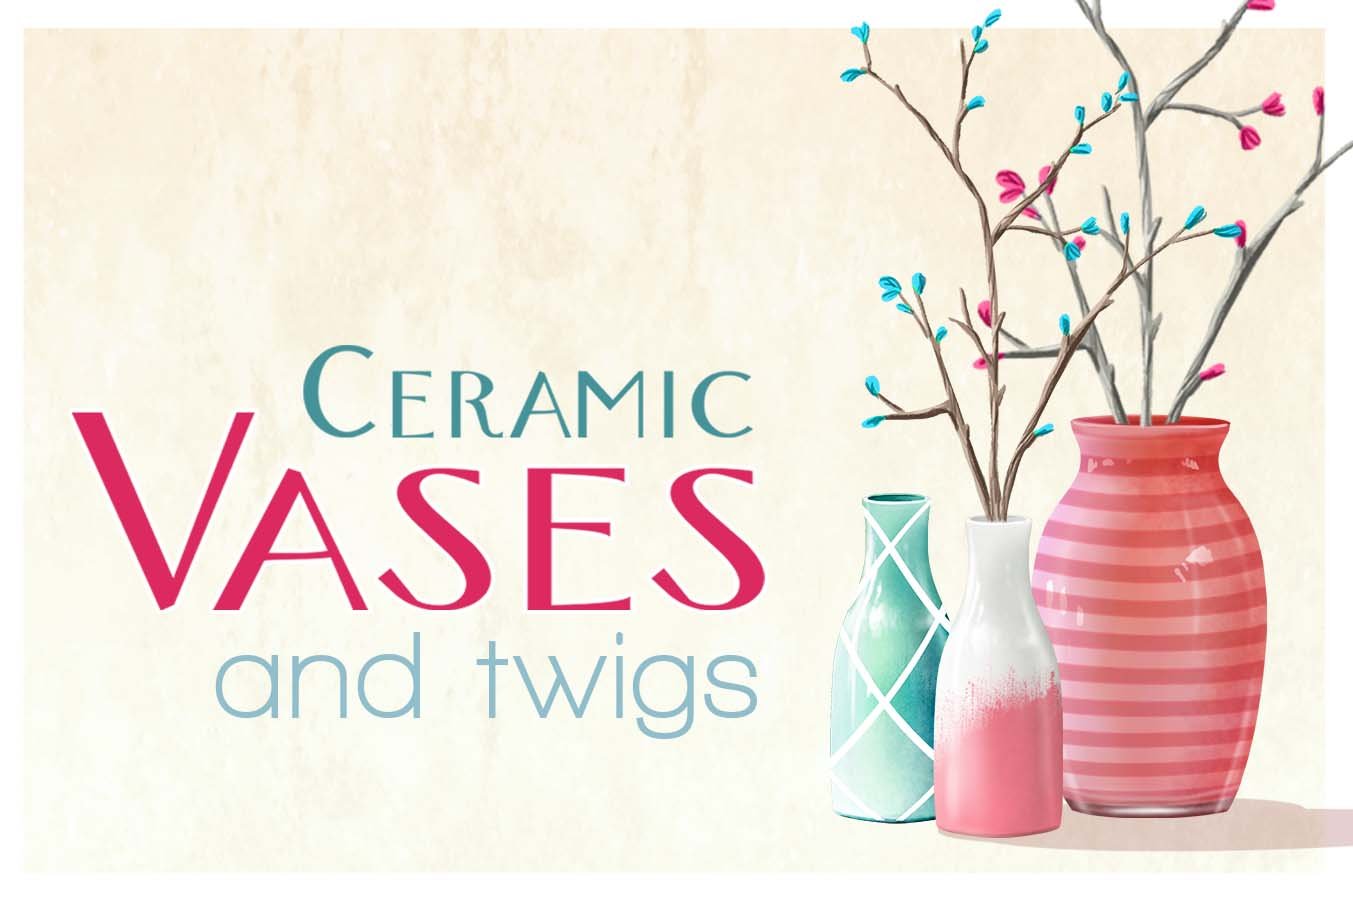 Ceramic Vases & twigs (full pack) cover image.